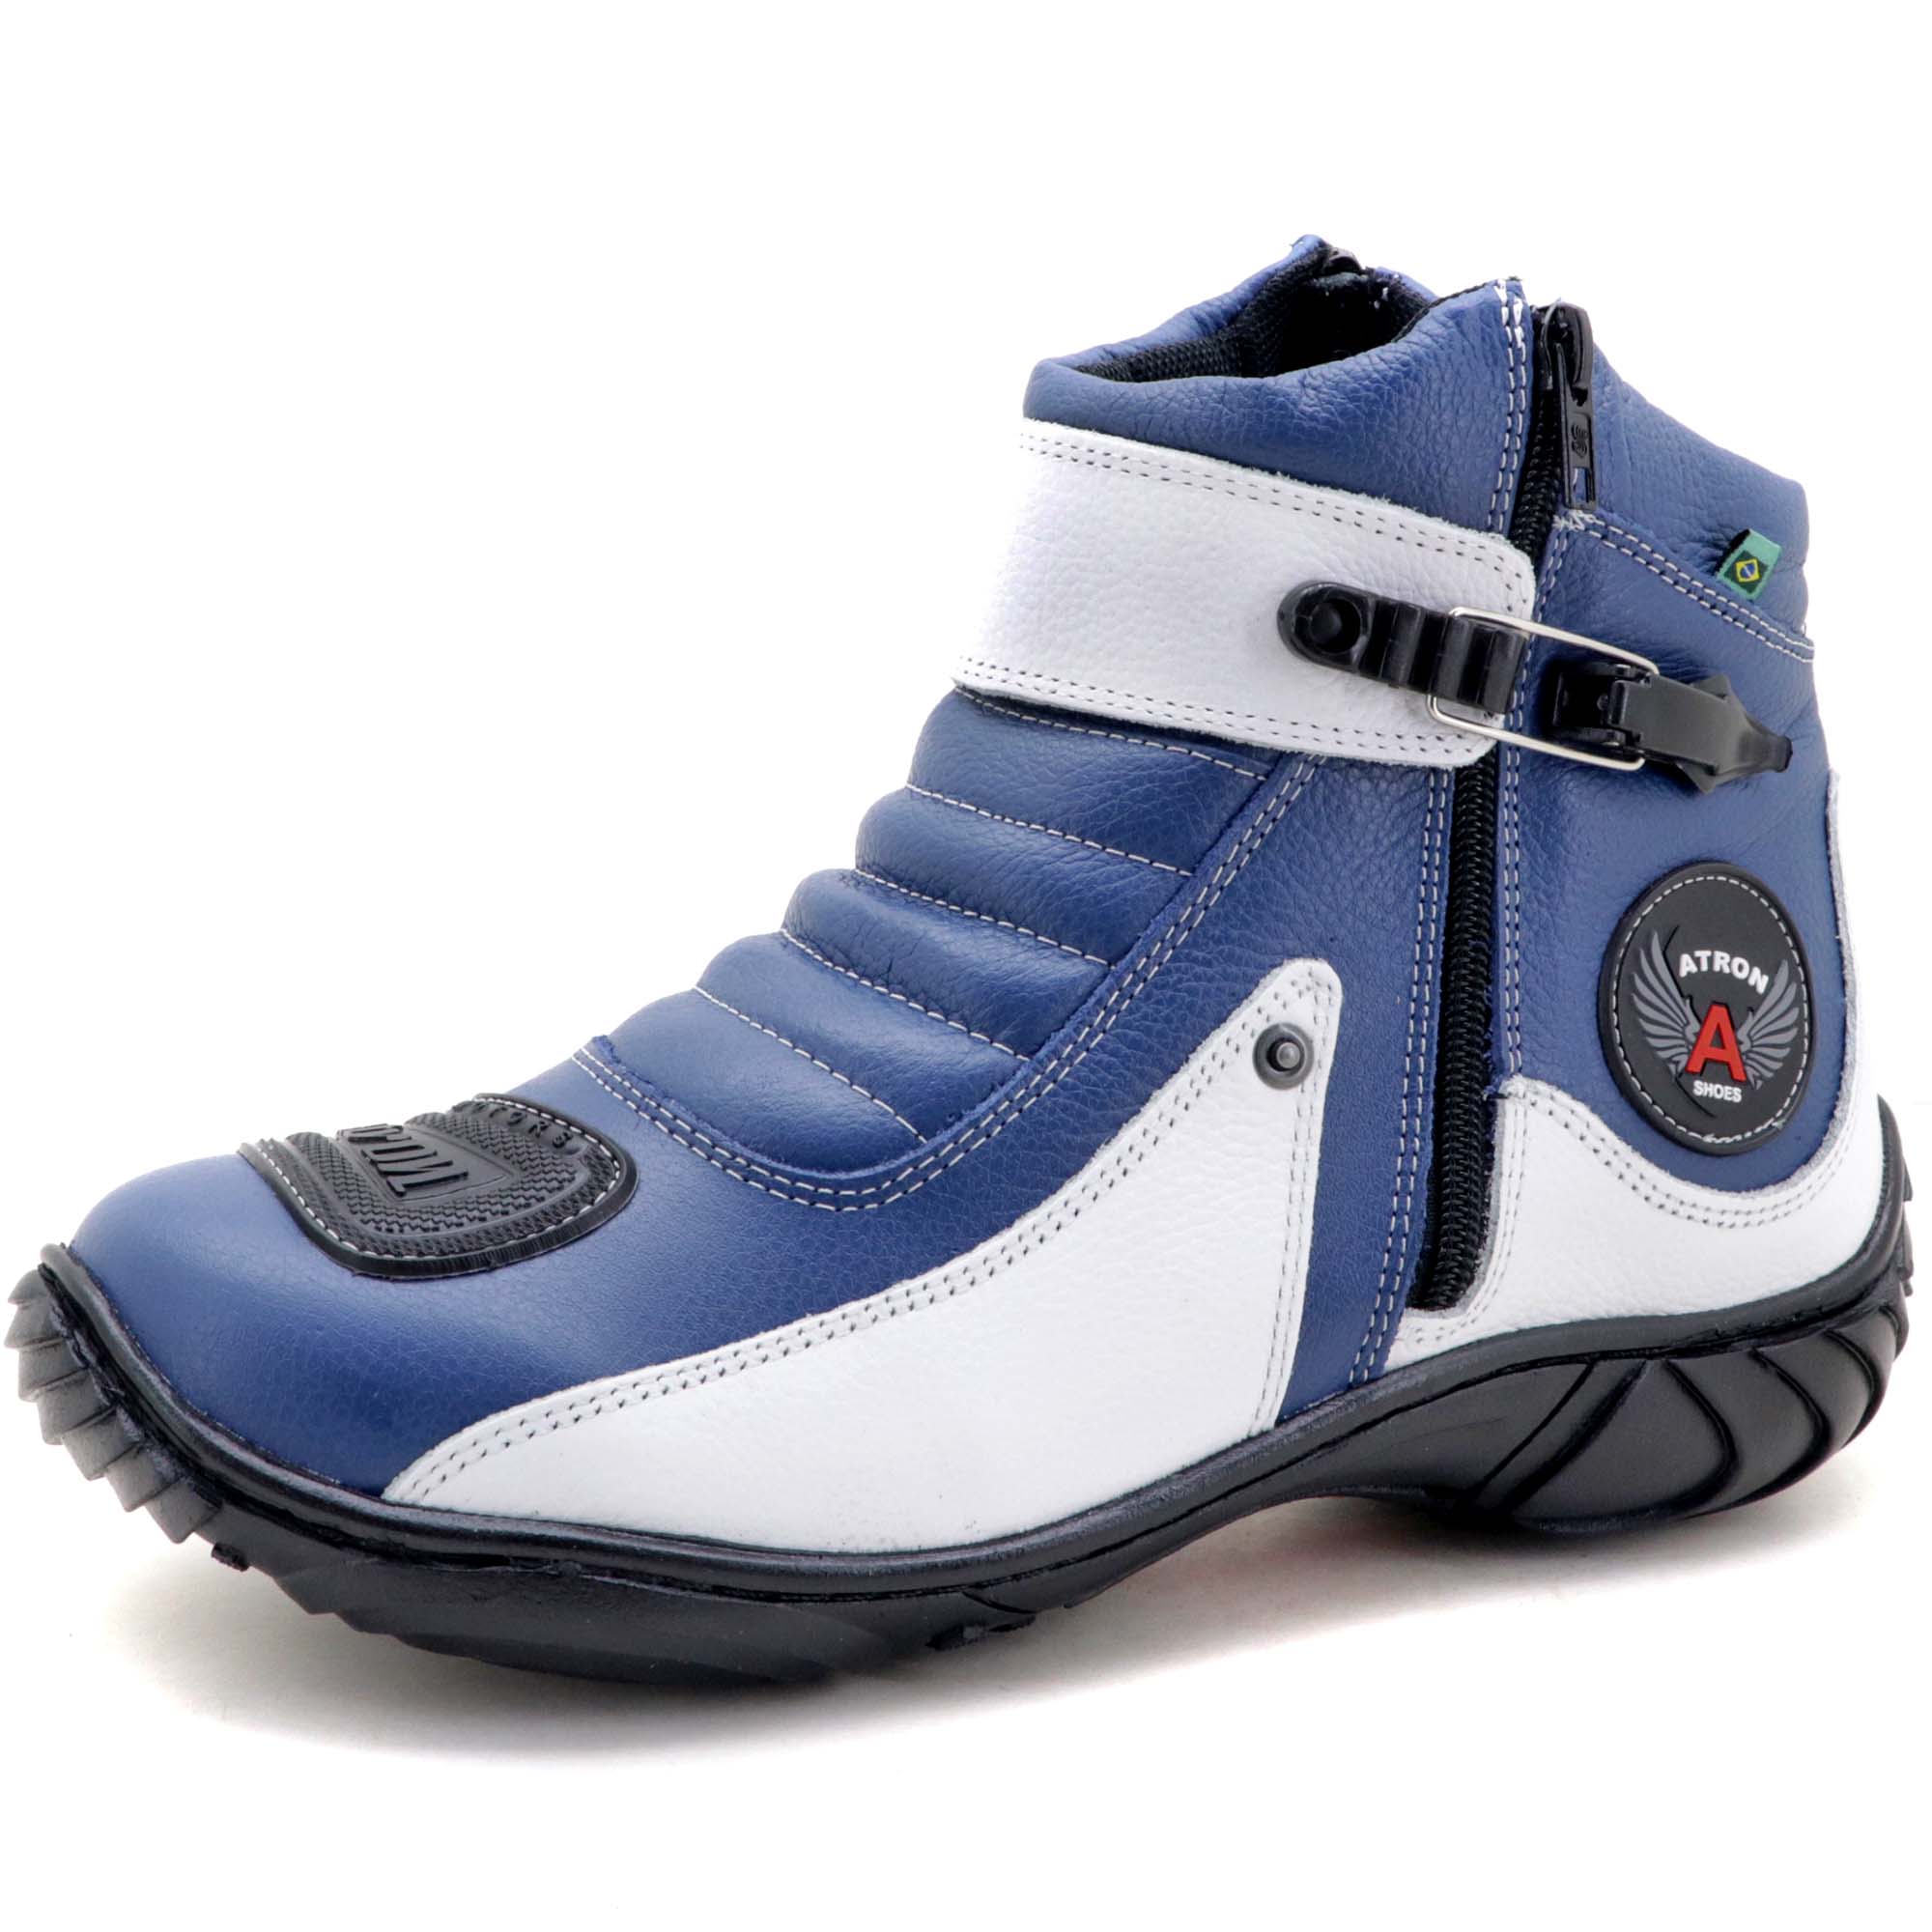 Bota para motociclista em couro Atron Shoes 271 nas cores azul e branco